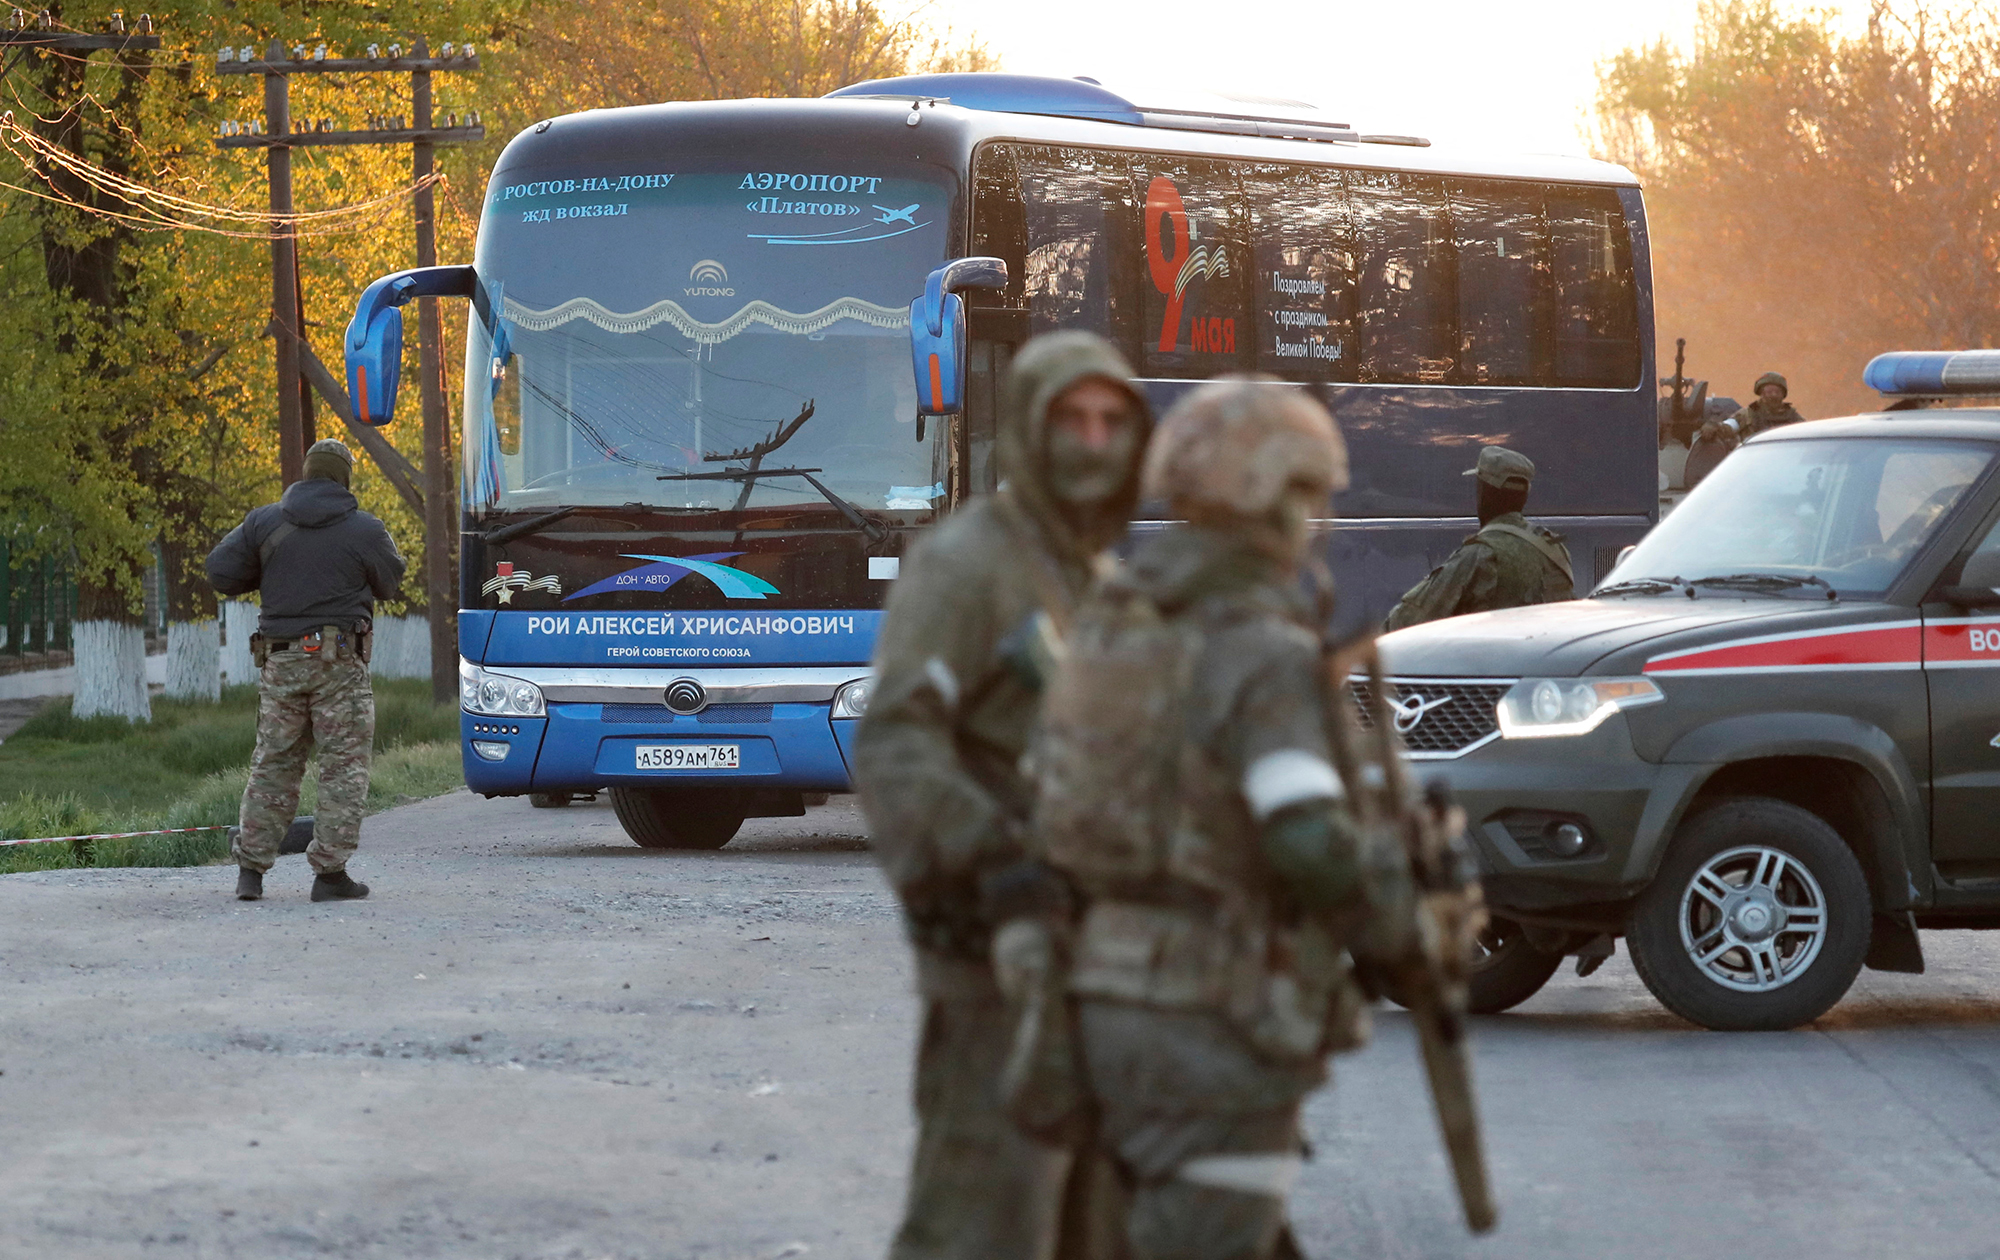 Los medios estatales rusos dicen que 25 civiles han sido evacuados de Azovstal